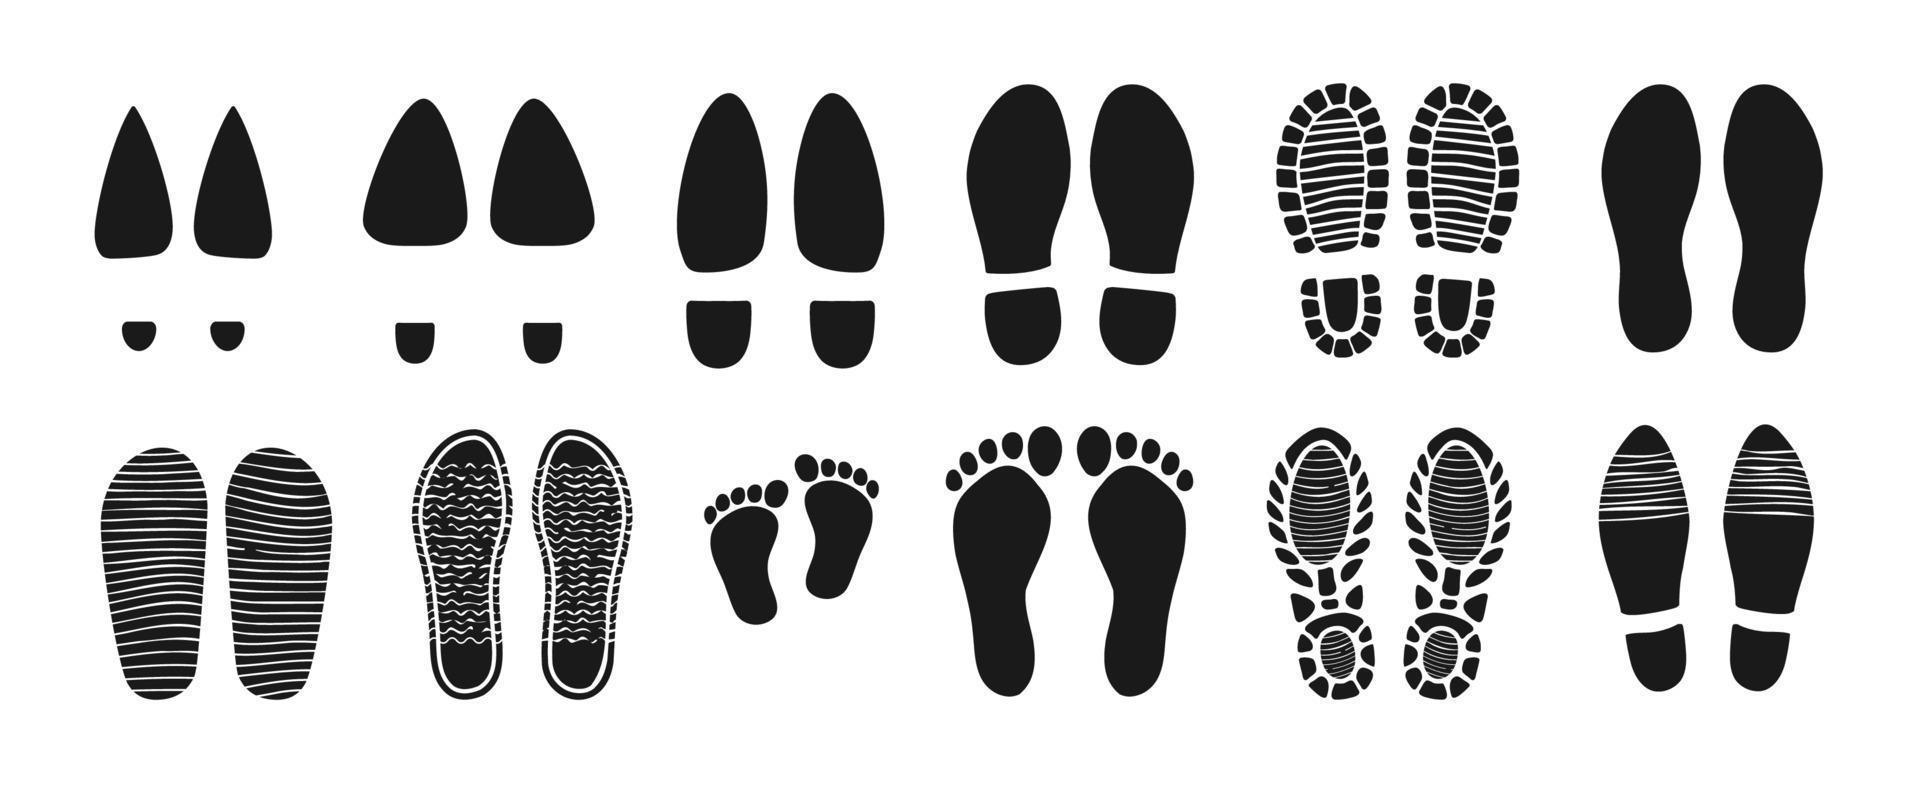 sapatos de homem e mulher, pegadas de bebê descalço vetor